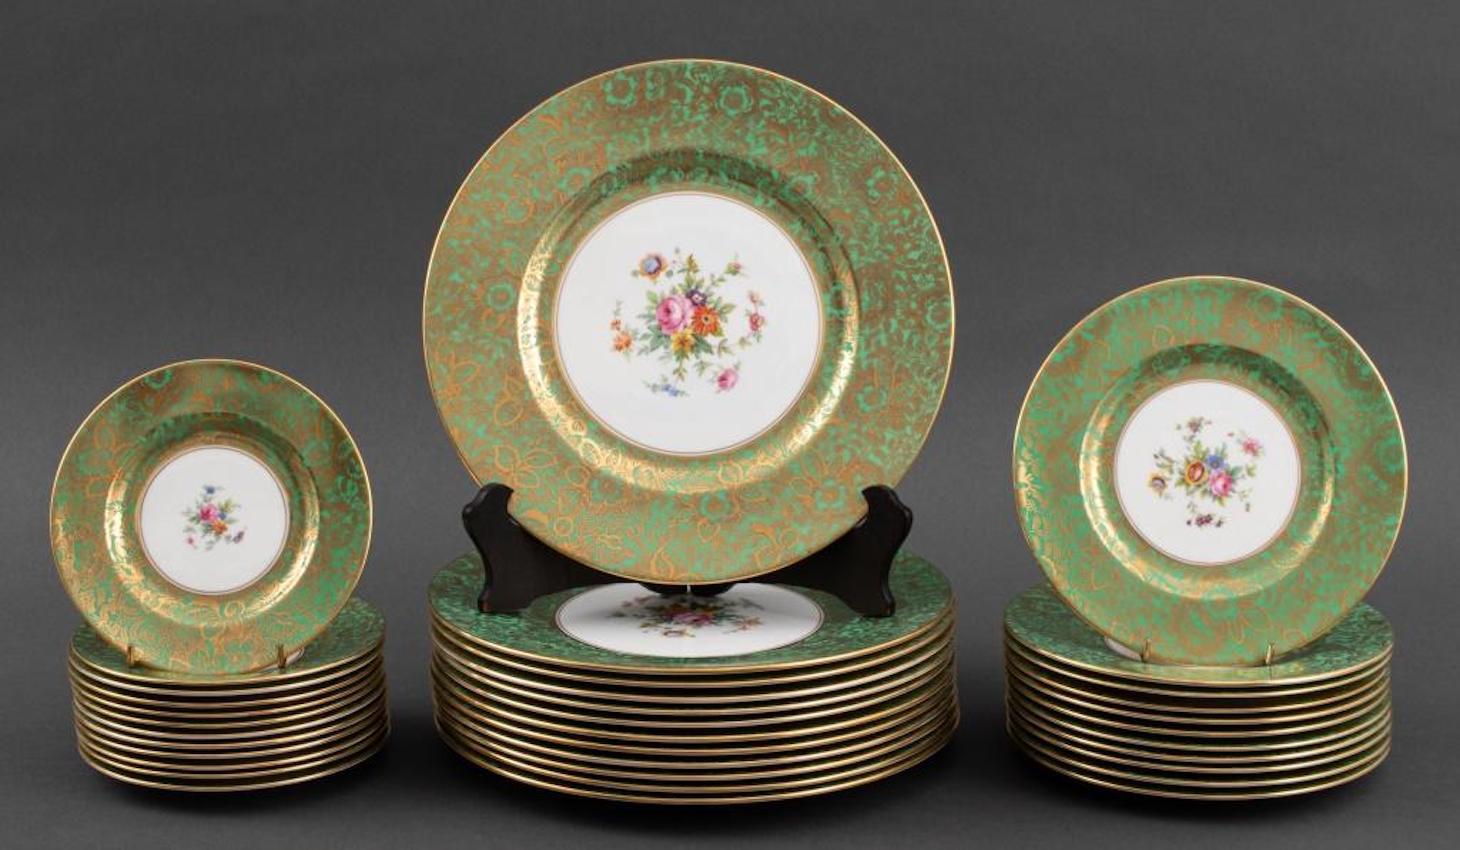 
Service de table en porcelaine peint et décoré à la main par Minton pour douze personnes.
Fabriqué en Angleterre entre 1948 et 1970 